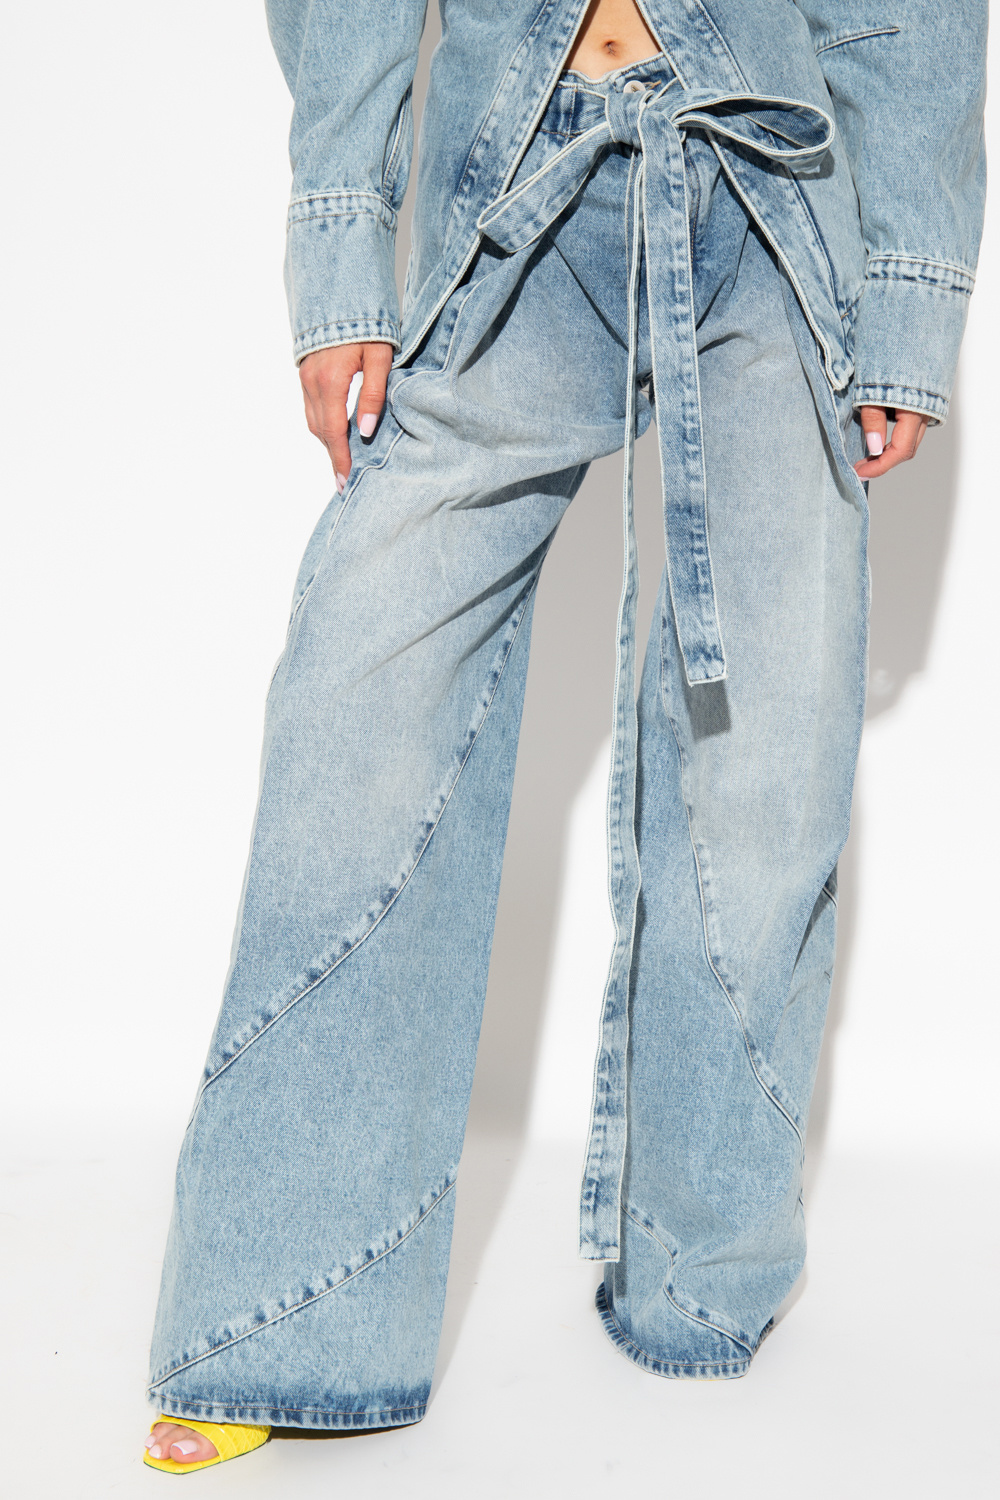 The Attico Hazen jeans